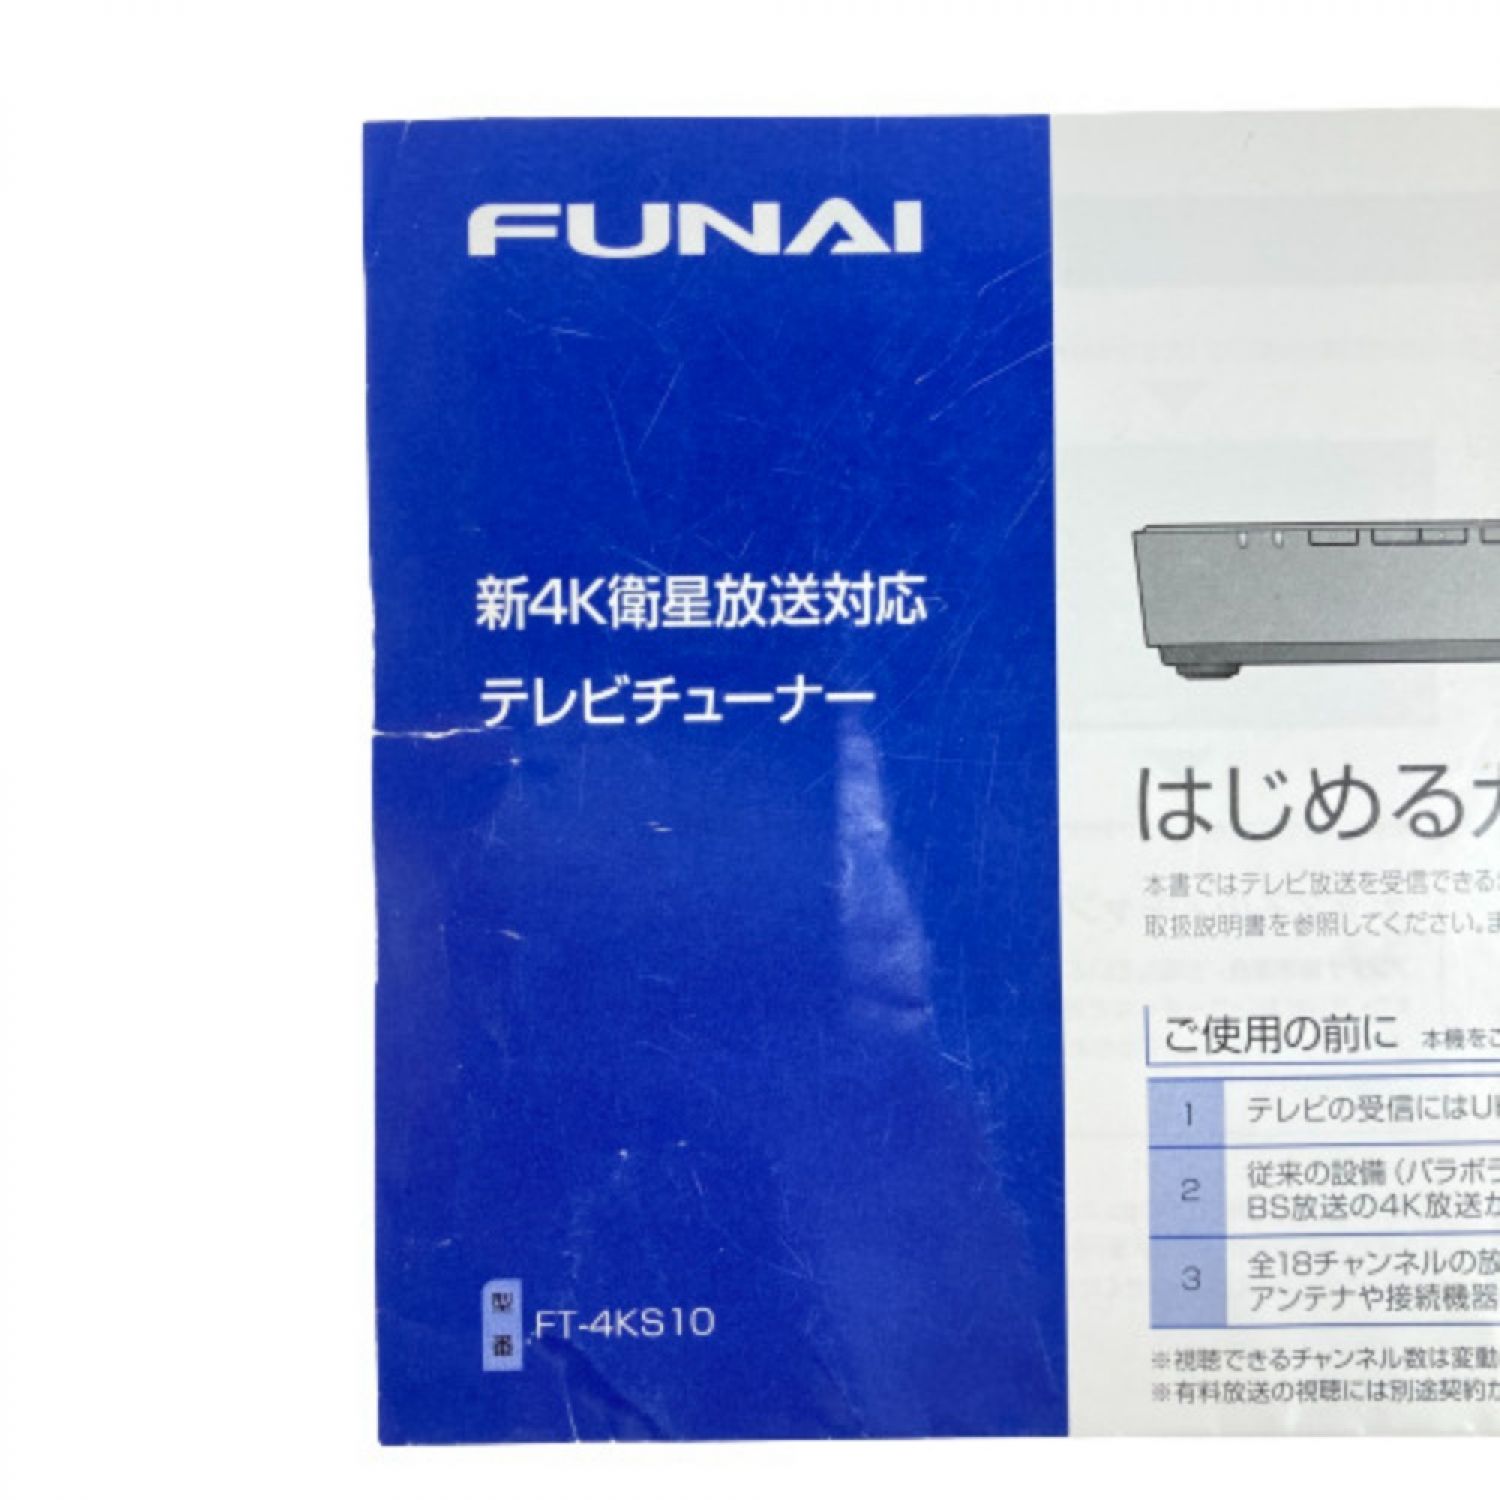 【新品未使用】FUNAI新4K衛星放送対応テレビチューナーFT-4KS10